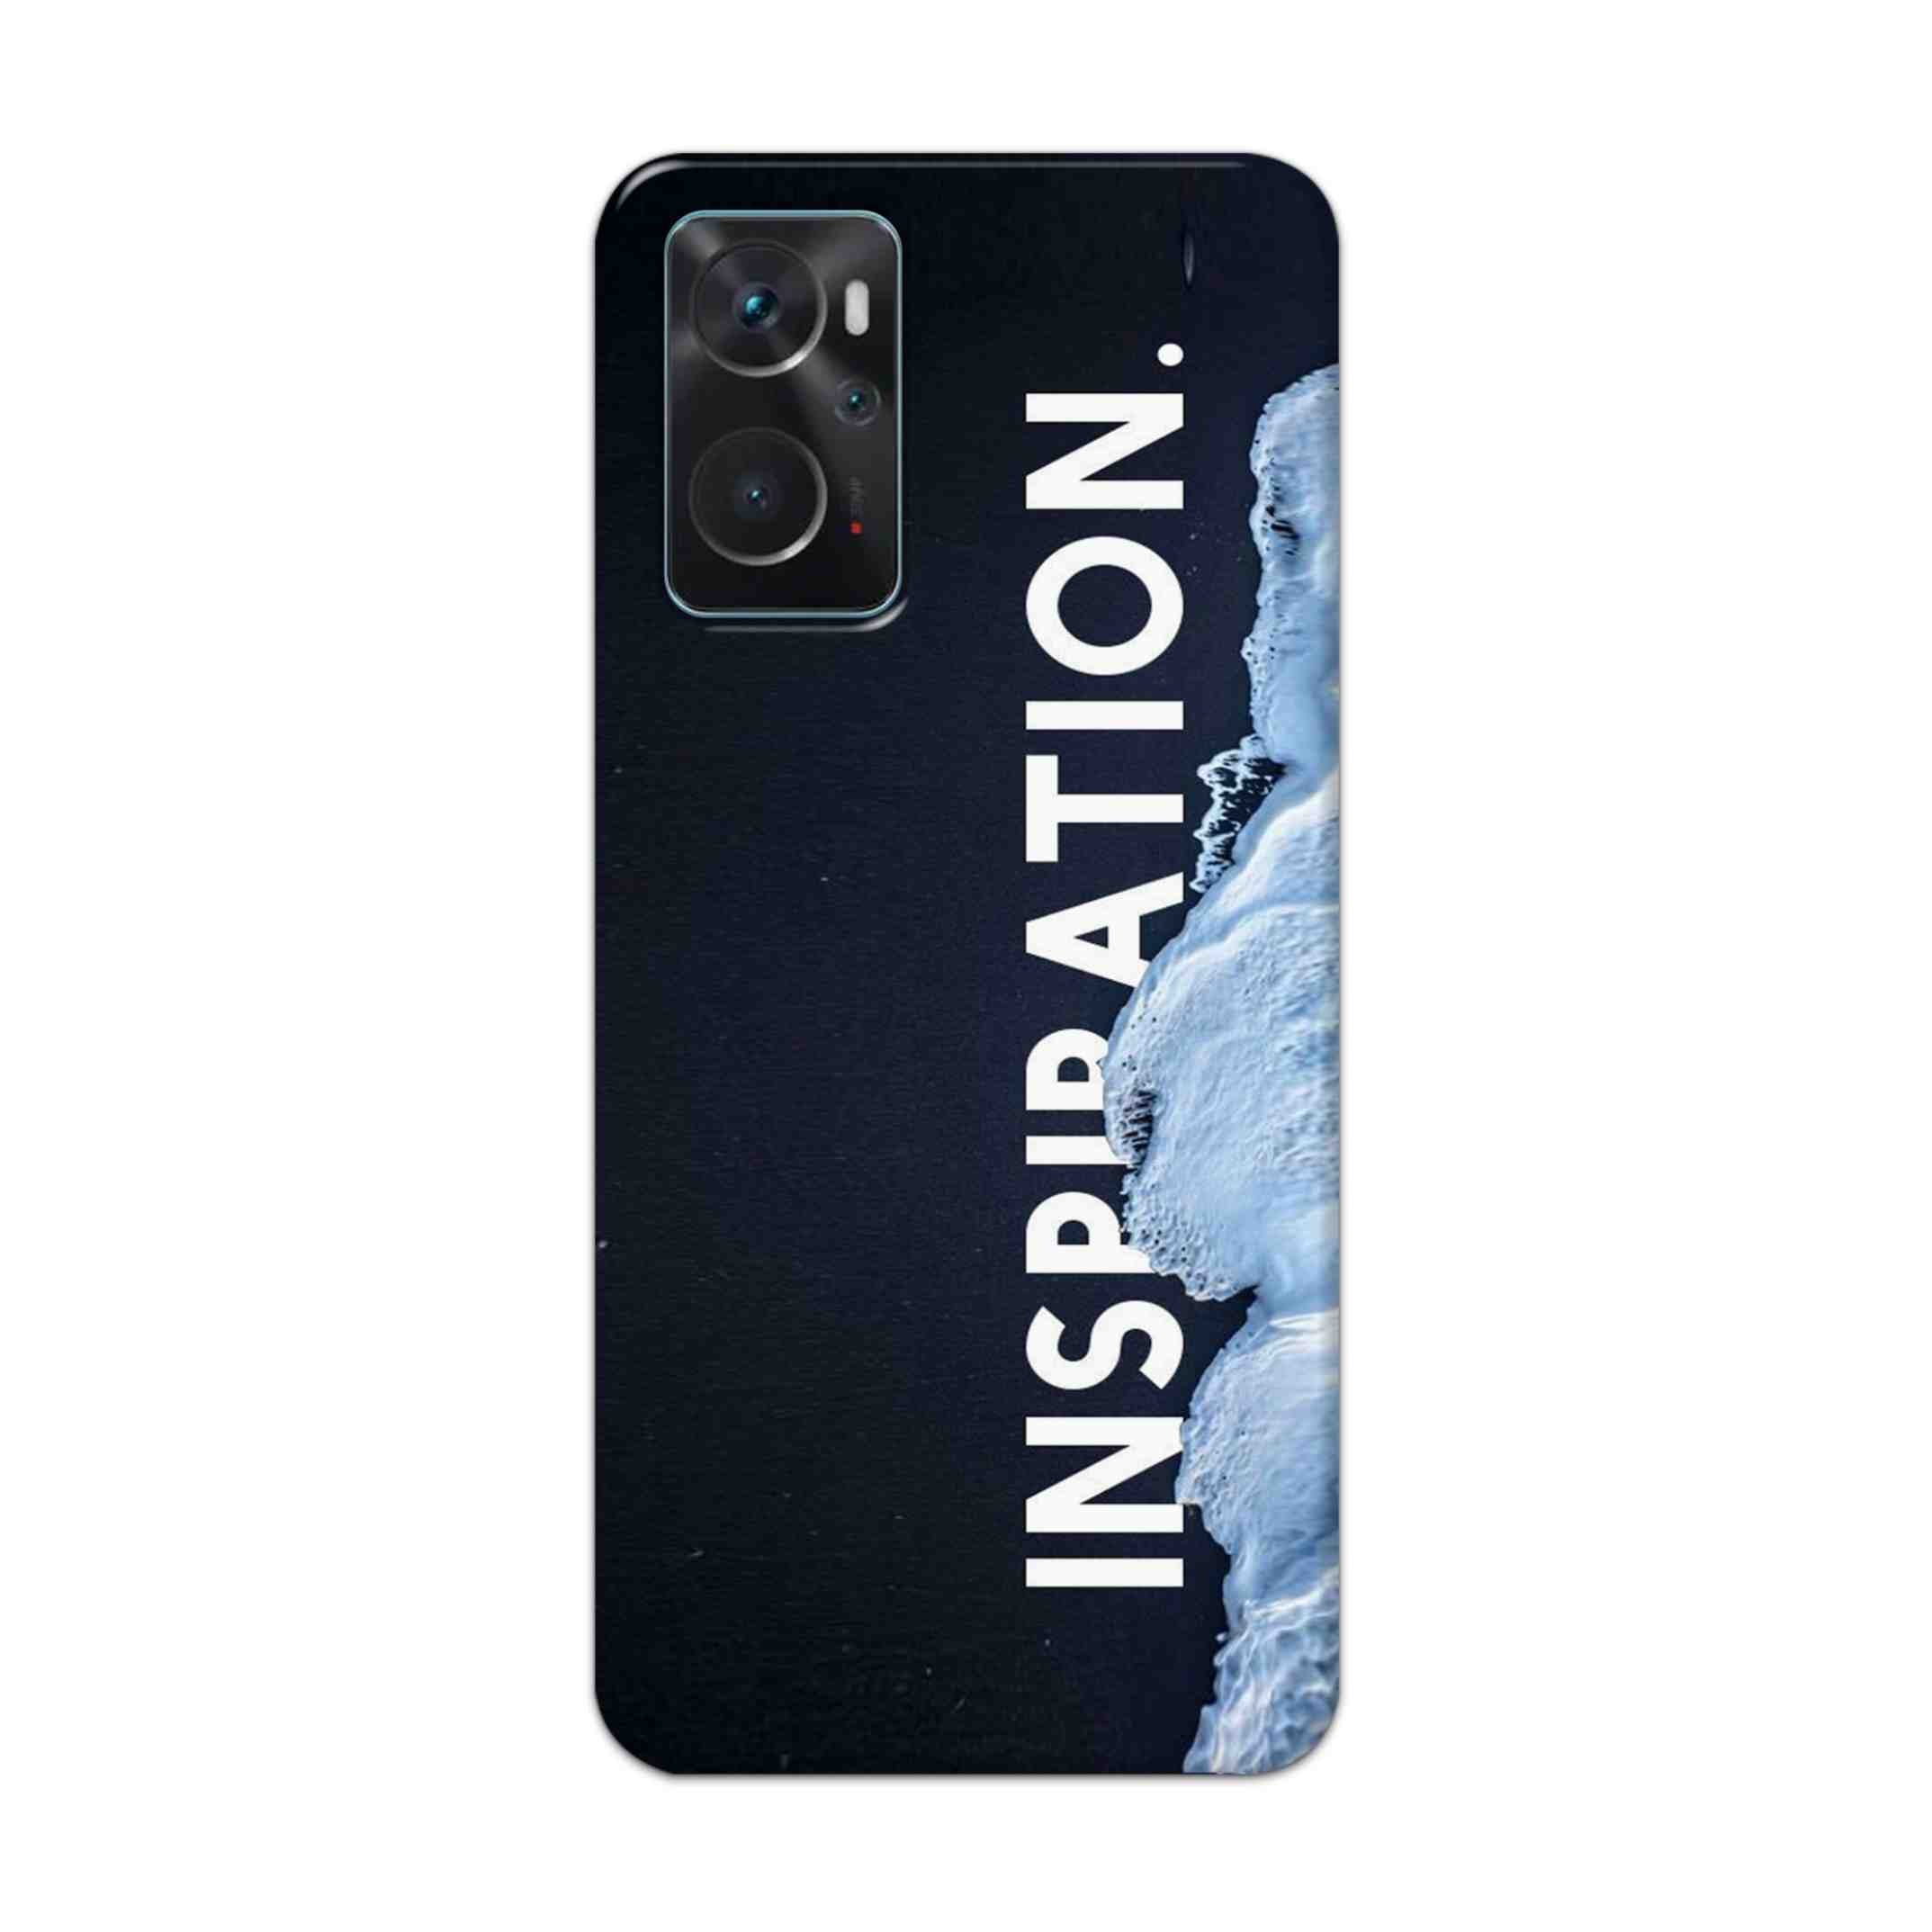 Buy Inspiration Hard Back Mobile Phone Case Cover For Oppo K10 Online